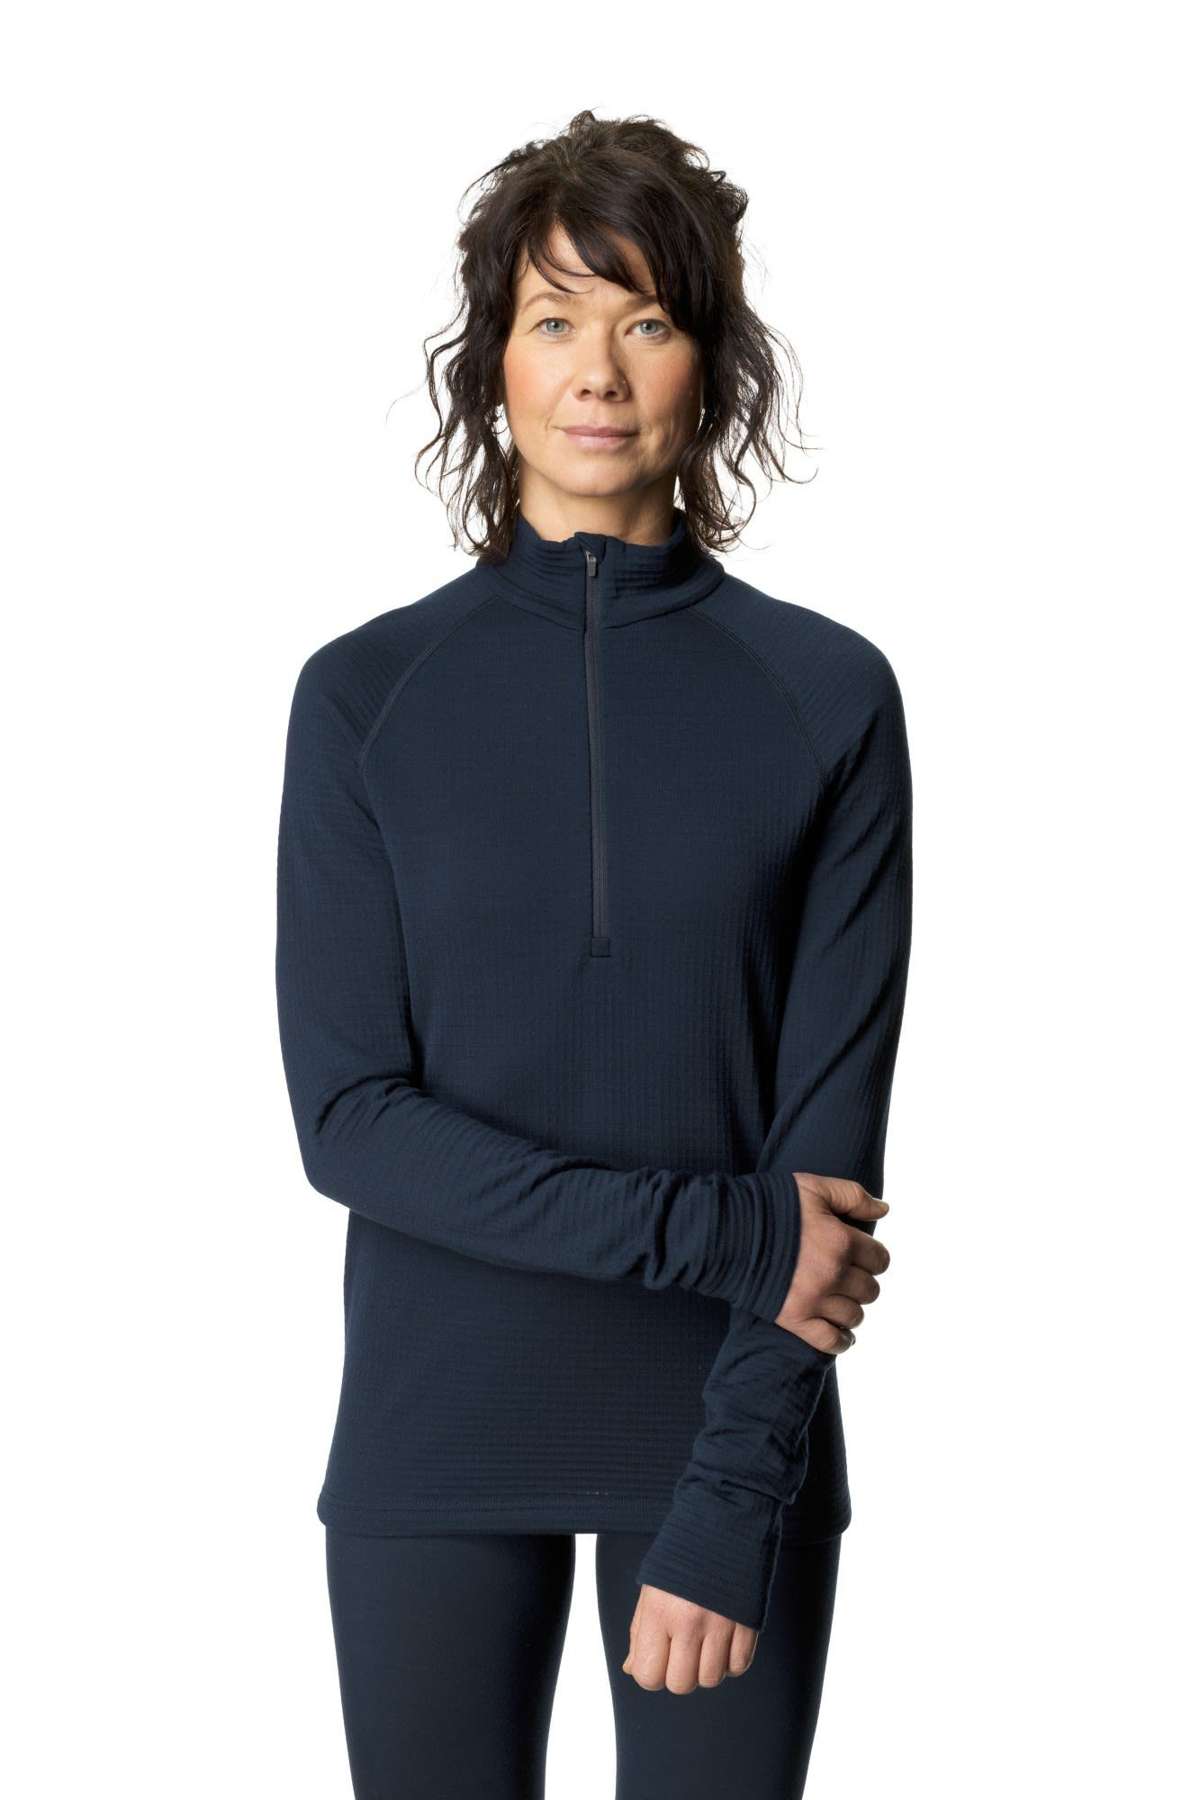 Флисовый пуловер W Desoli Thermal, женский свитер с молнией до половины длины